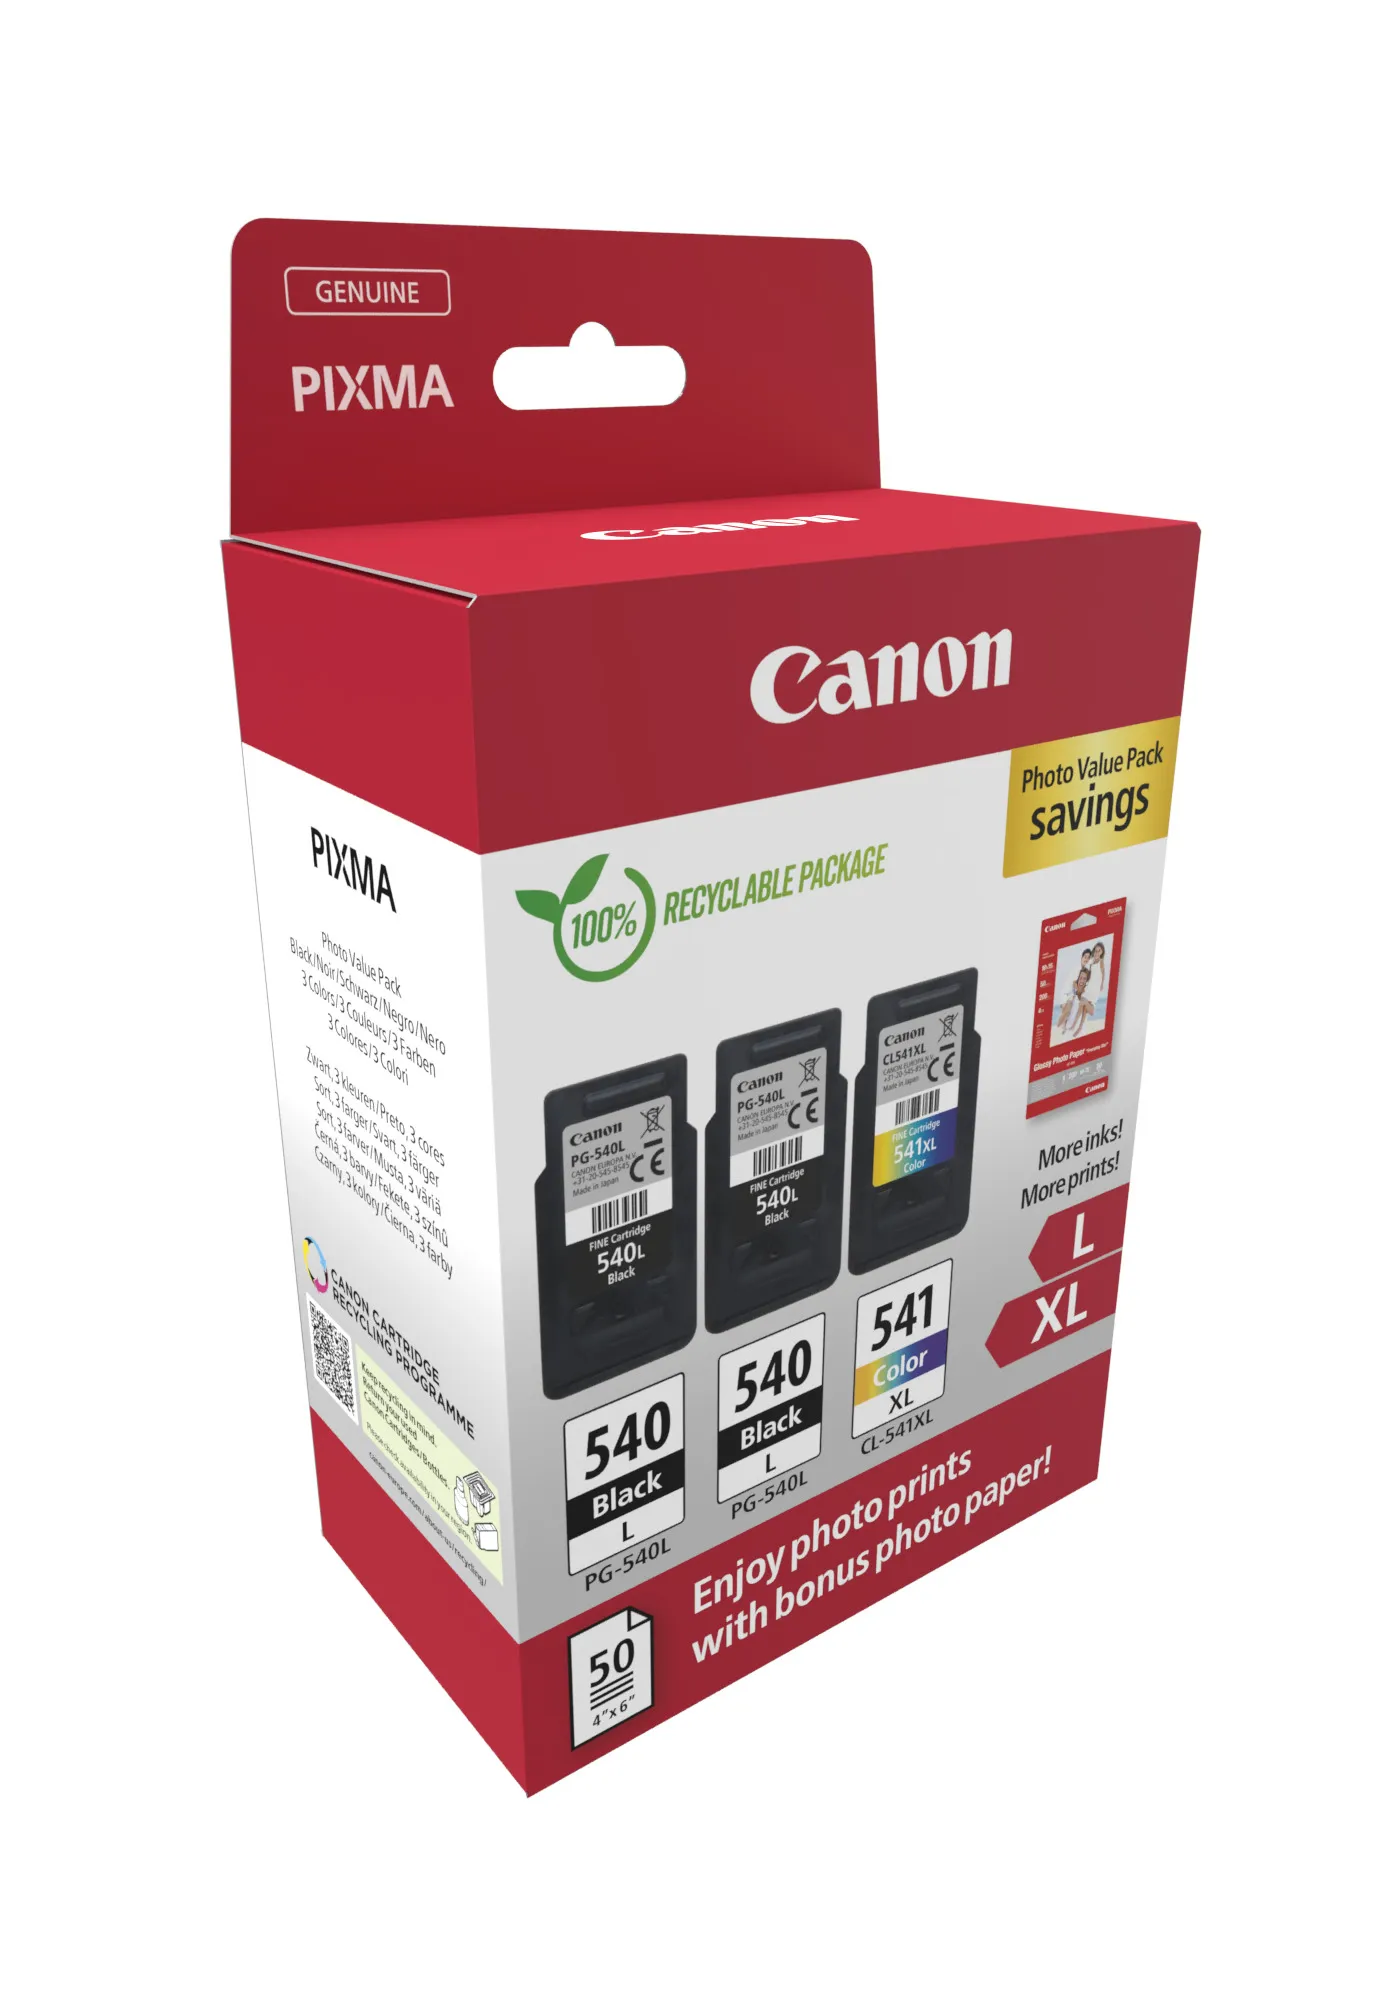 Vente CANON PG-540Lx2/CL-541XL Ink Cartridge PVP Canon au meilleur prix - visuel 2